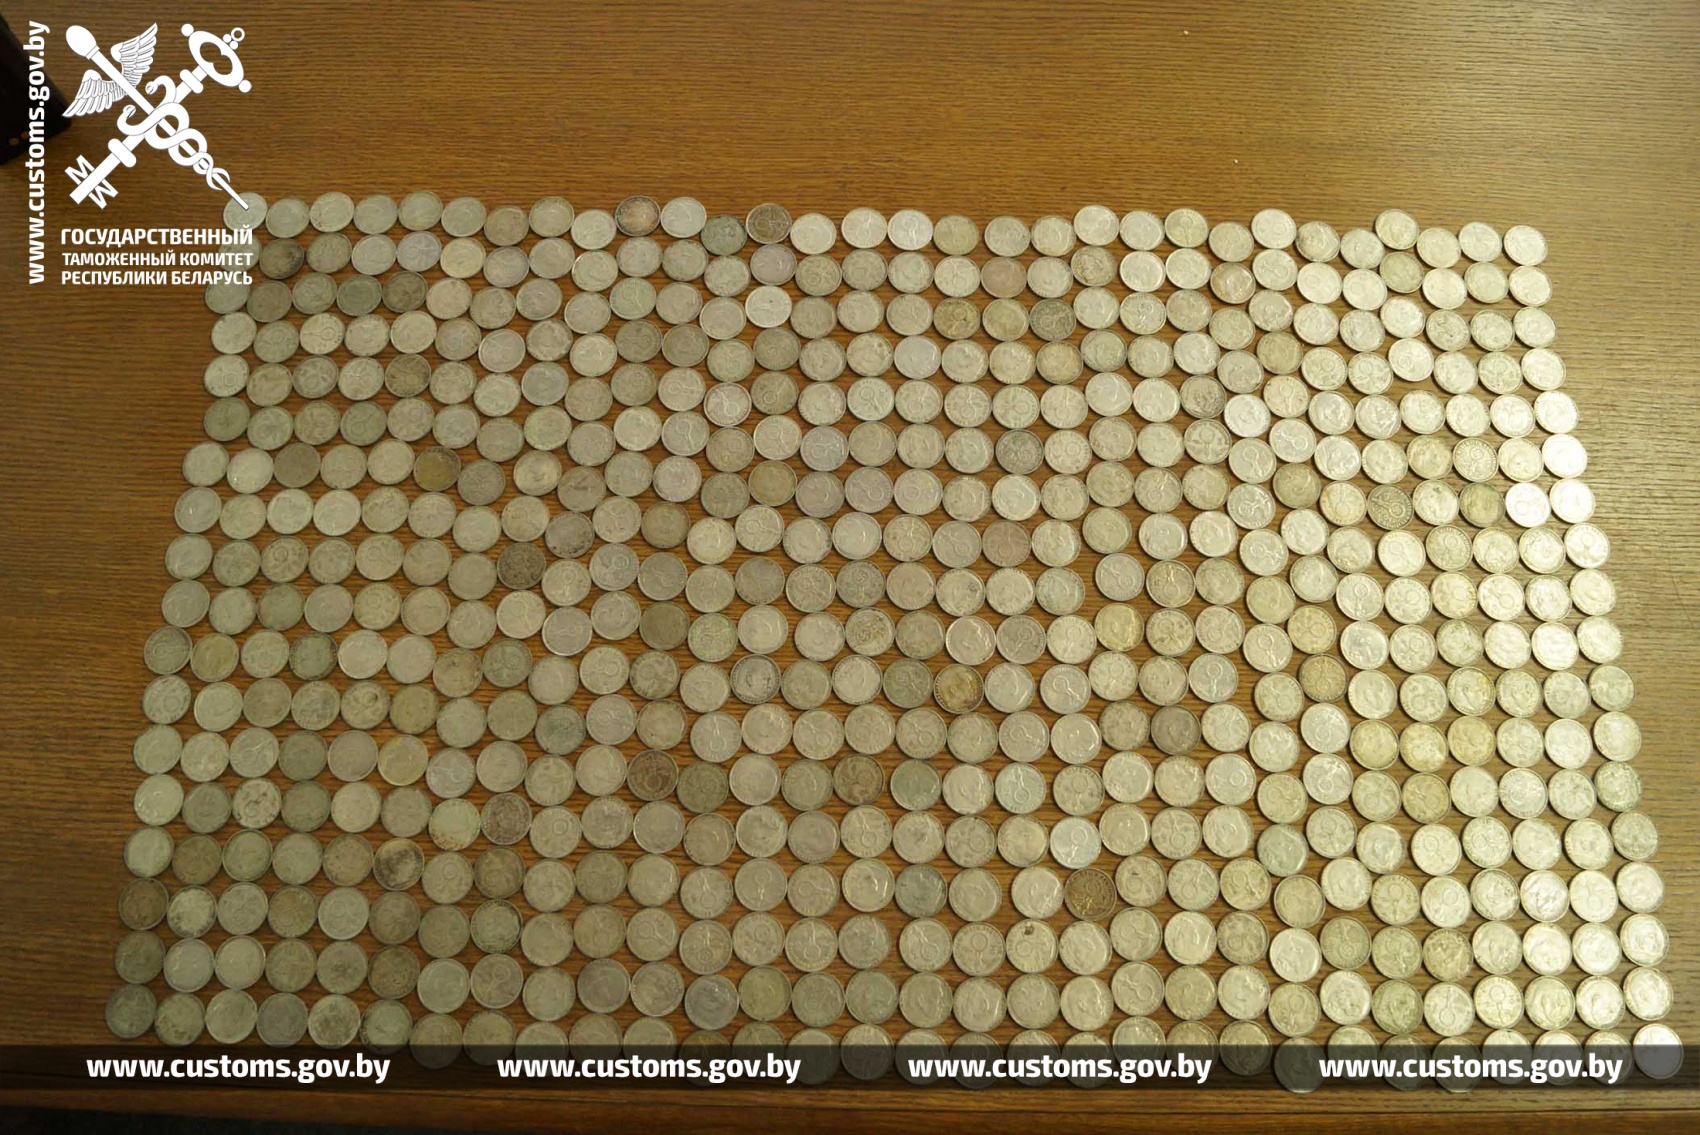 Гродненские таможенники пресекли незаконный ввоз на территорию Беларуси 540 монет с изображением фашистской свастики